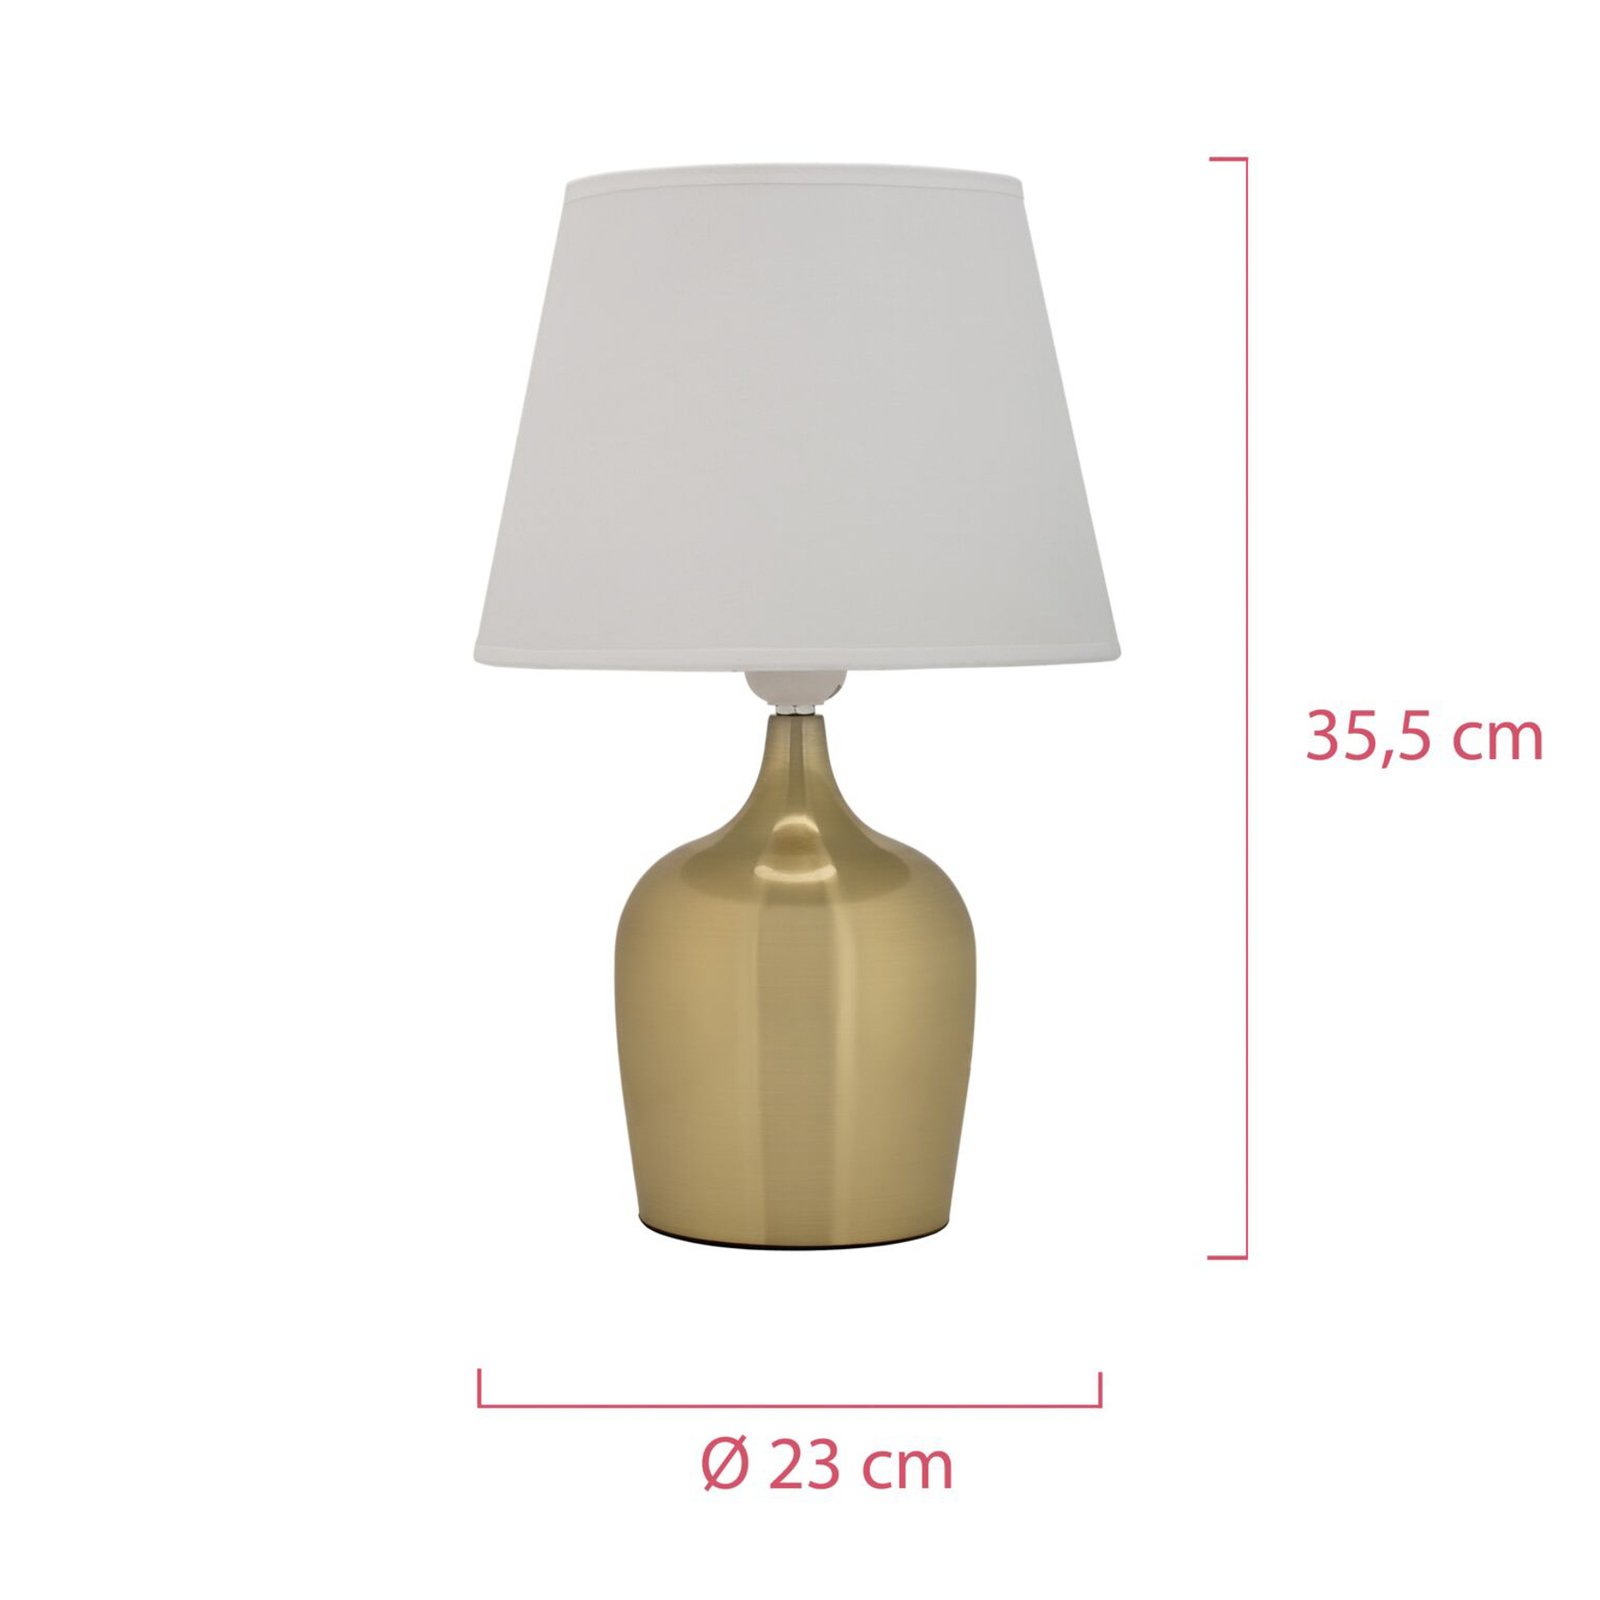 Pauleen Golden Glamour table lamp in gold/white